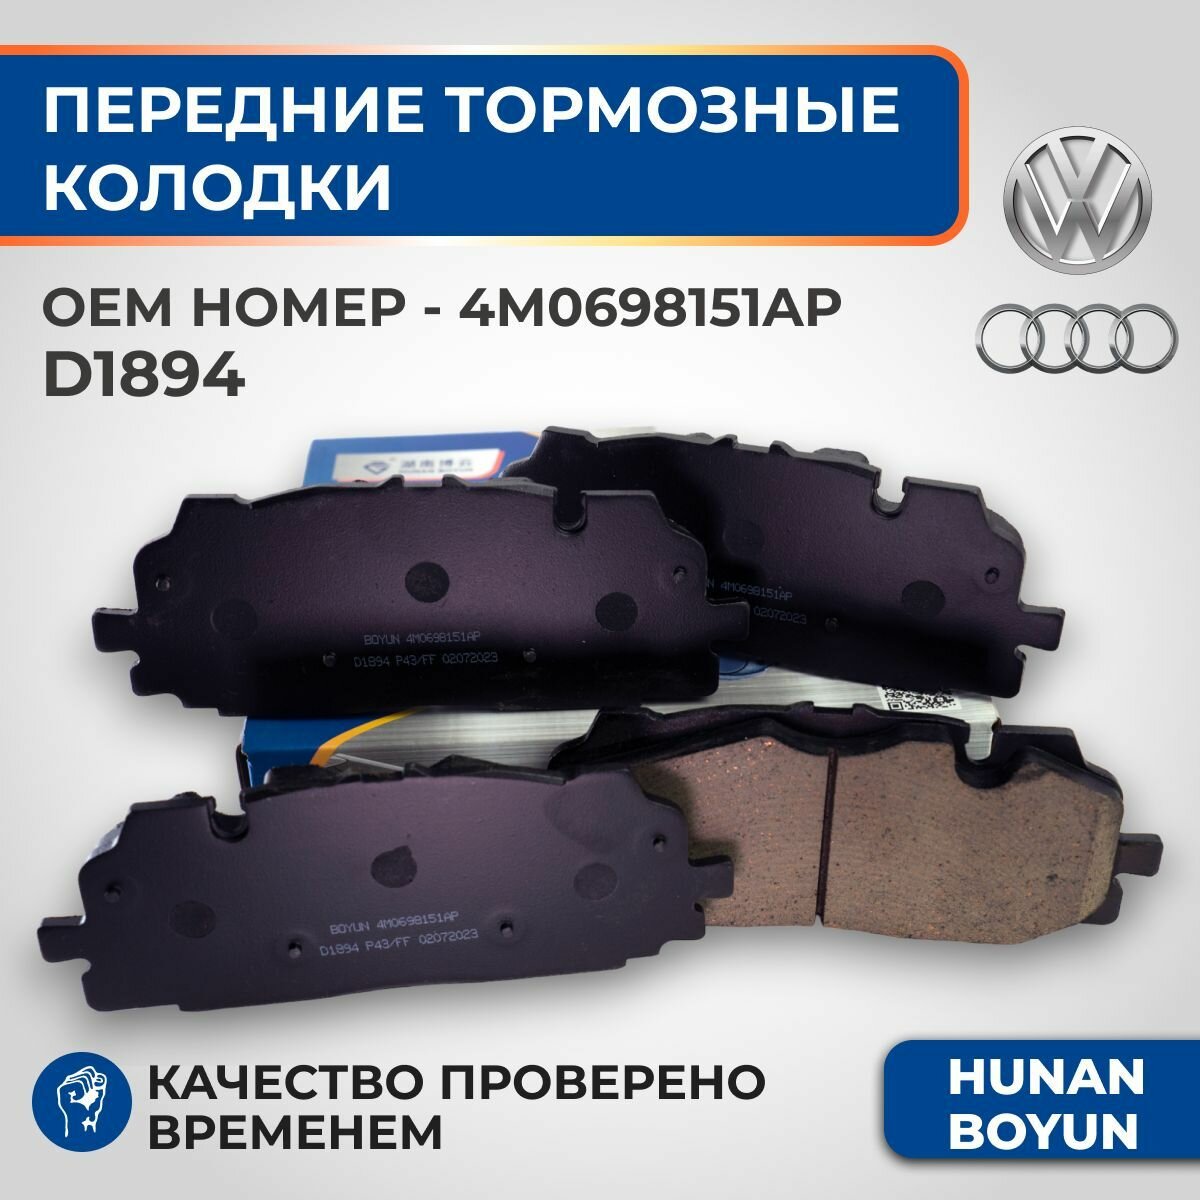 Передние тормозные колодки для Audi Q7, Q8, A4, A6, Volkswagen Touareg - 4M0698151AP